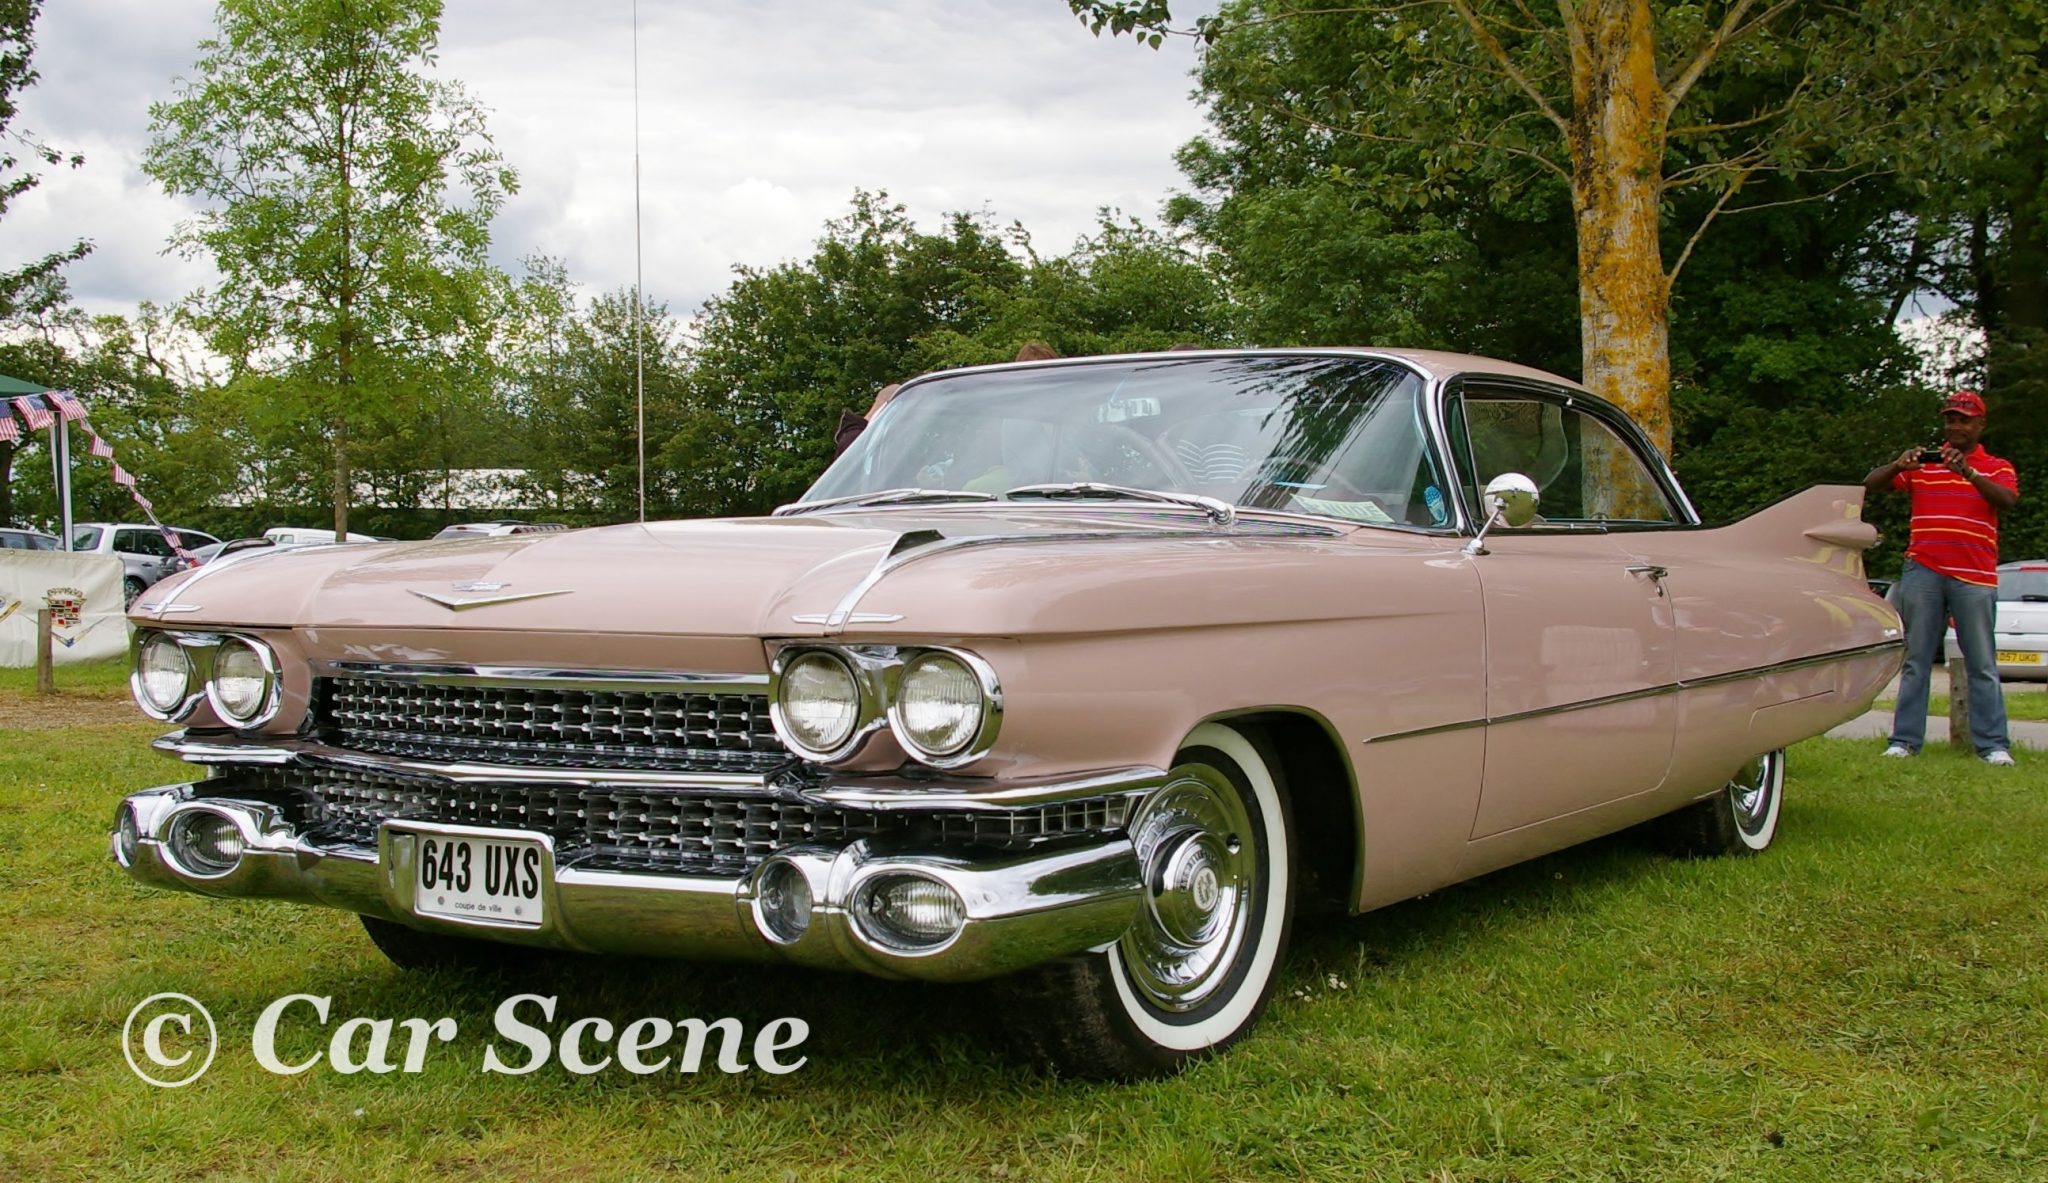 1959 Cadillac Coupe De Ville front three quarters view